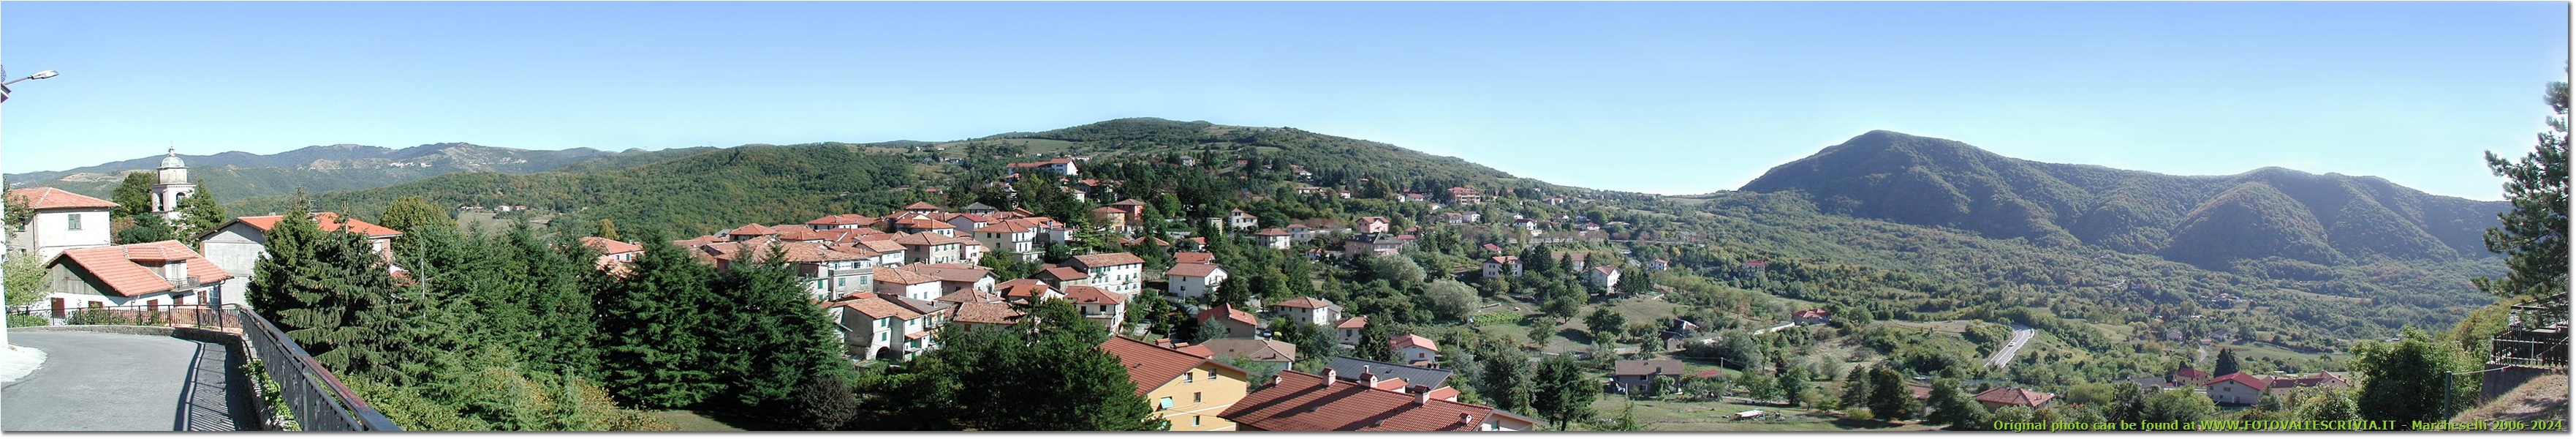 Panoramica di Crocefieschi - Crocefieschi&Vobbia - 2003 - Paesi - Estate - Olympus Camedia 3000